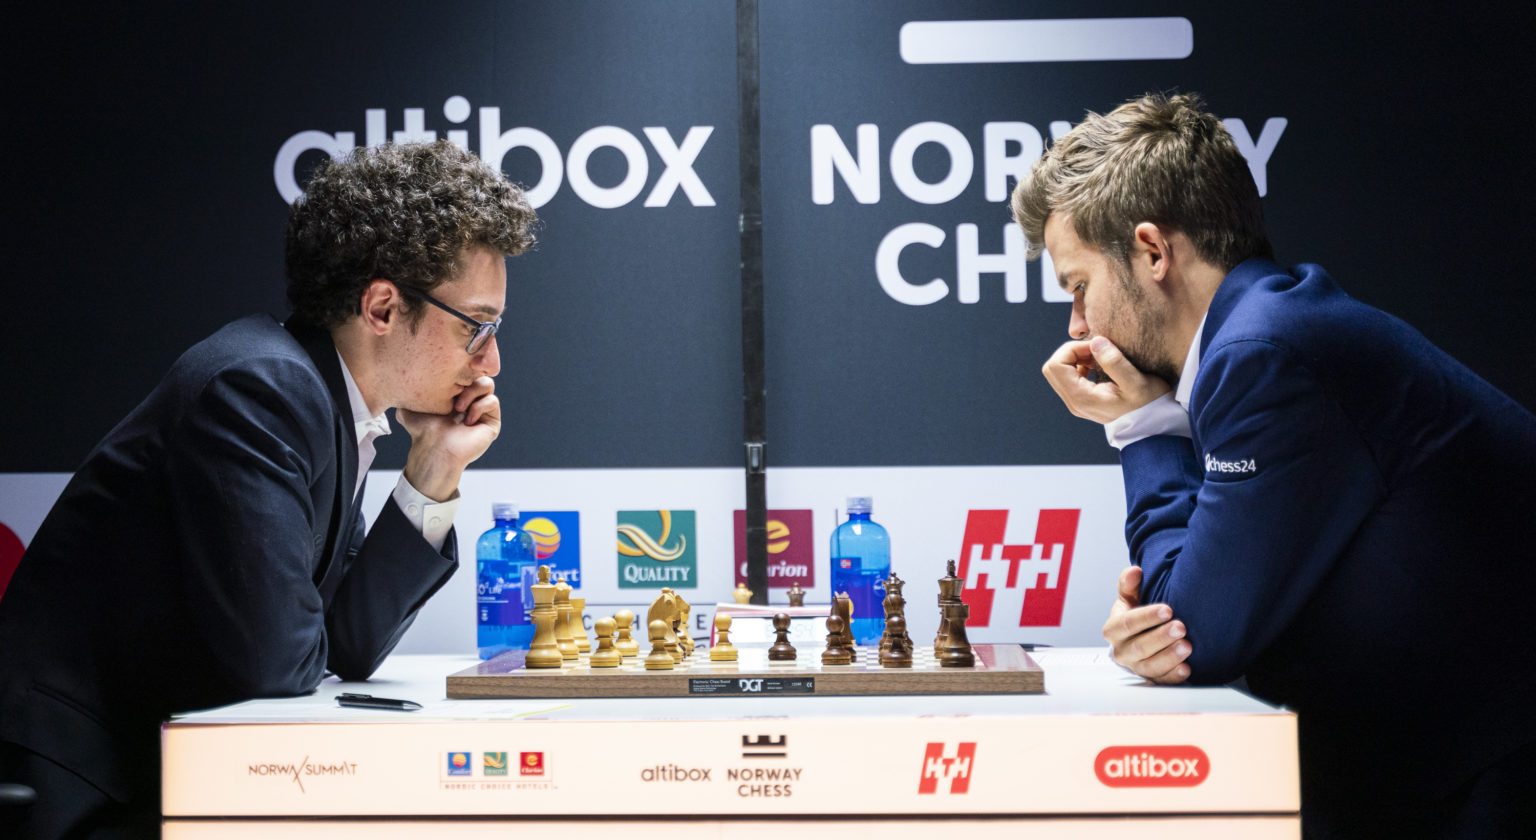 Norway Chess First toptournament post corona!